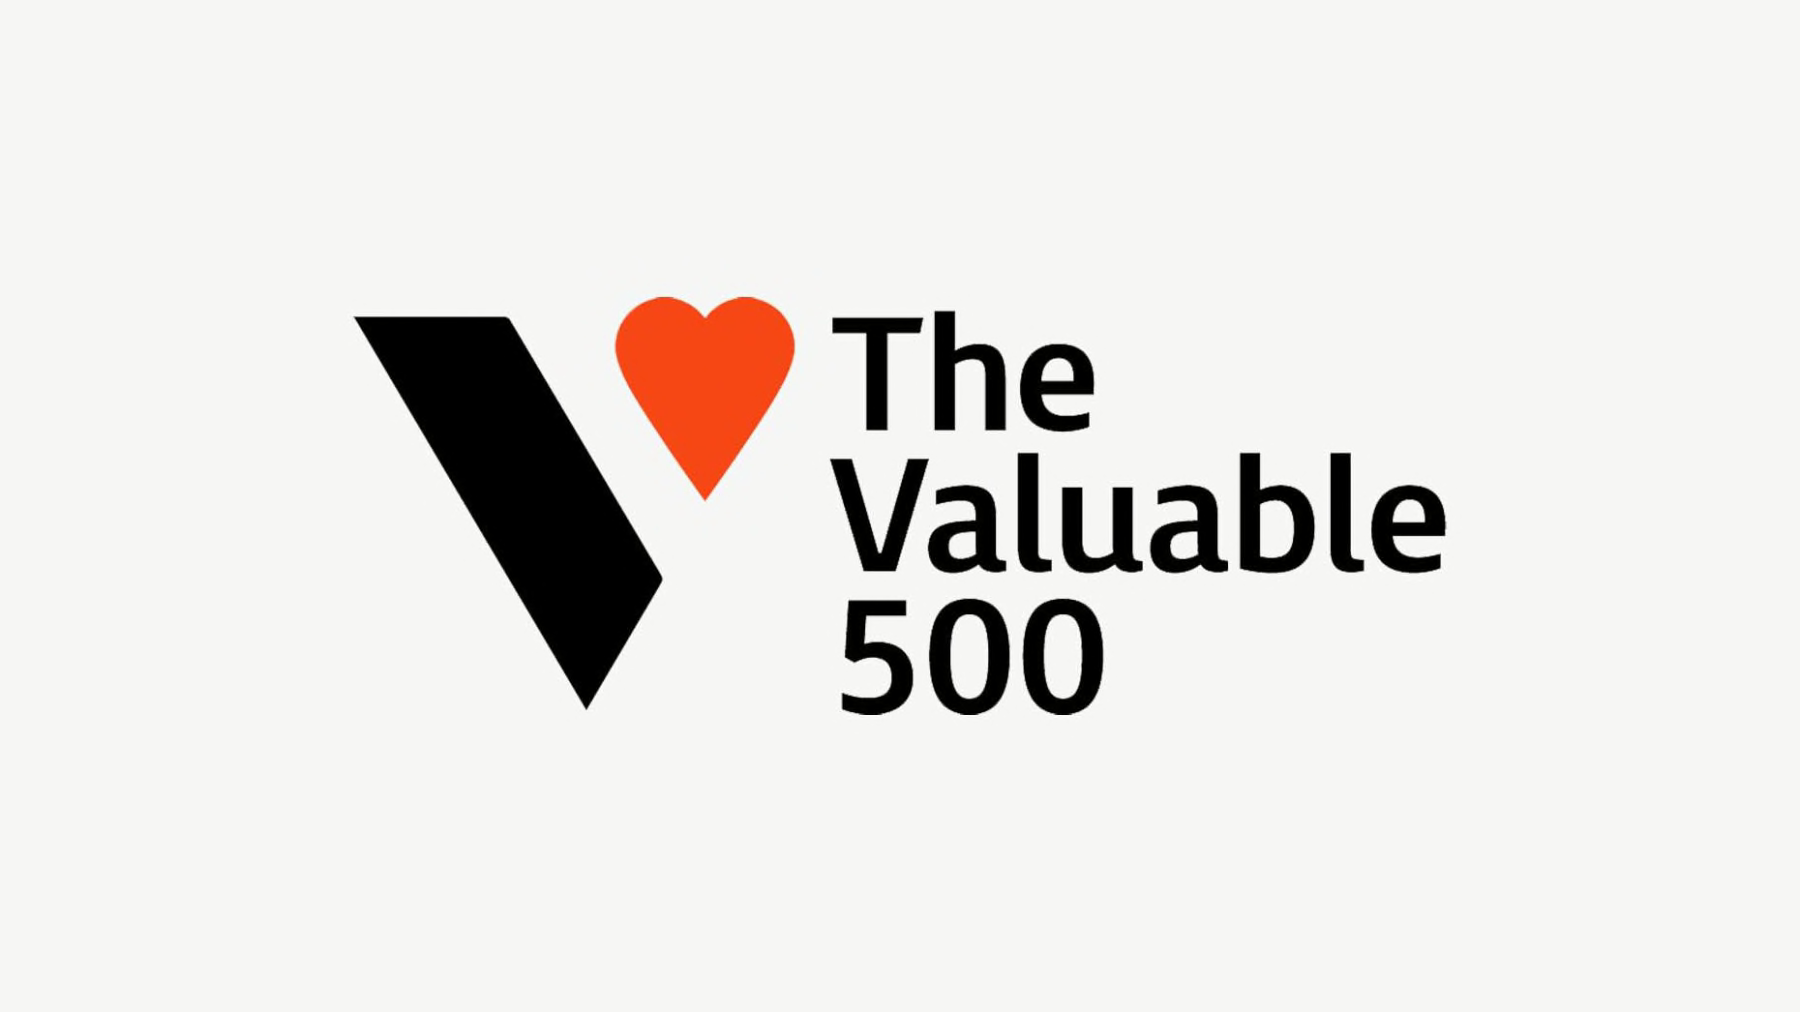 El logotipo de Vvaluable 500